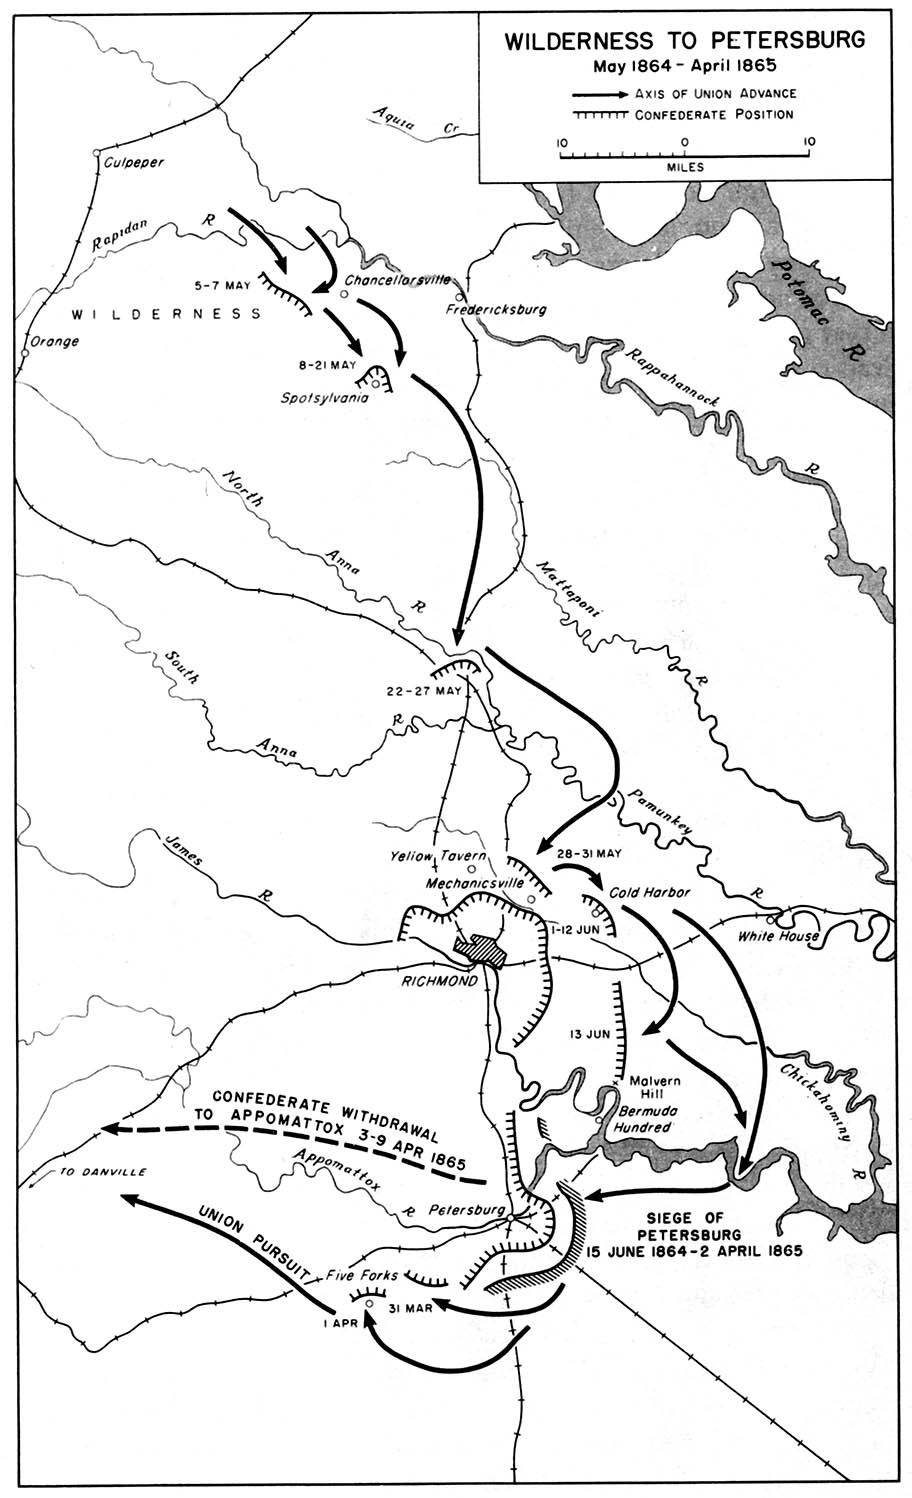 Siege of Petersburg Battlefield Map.jpg